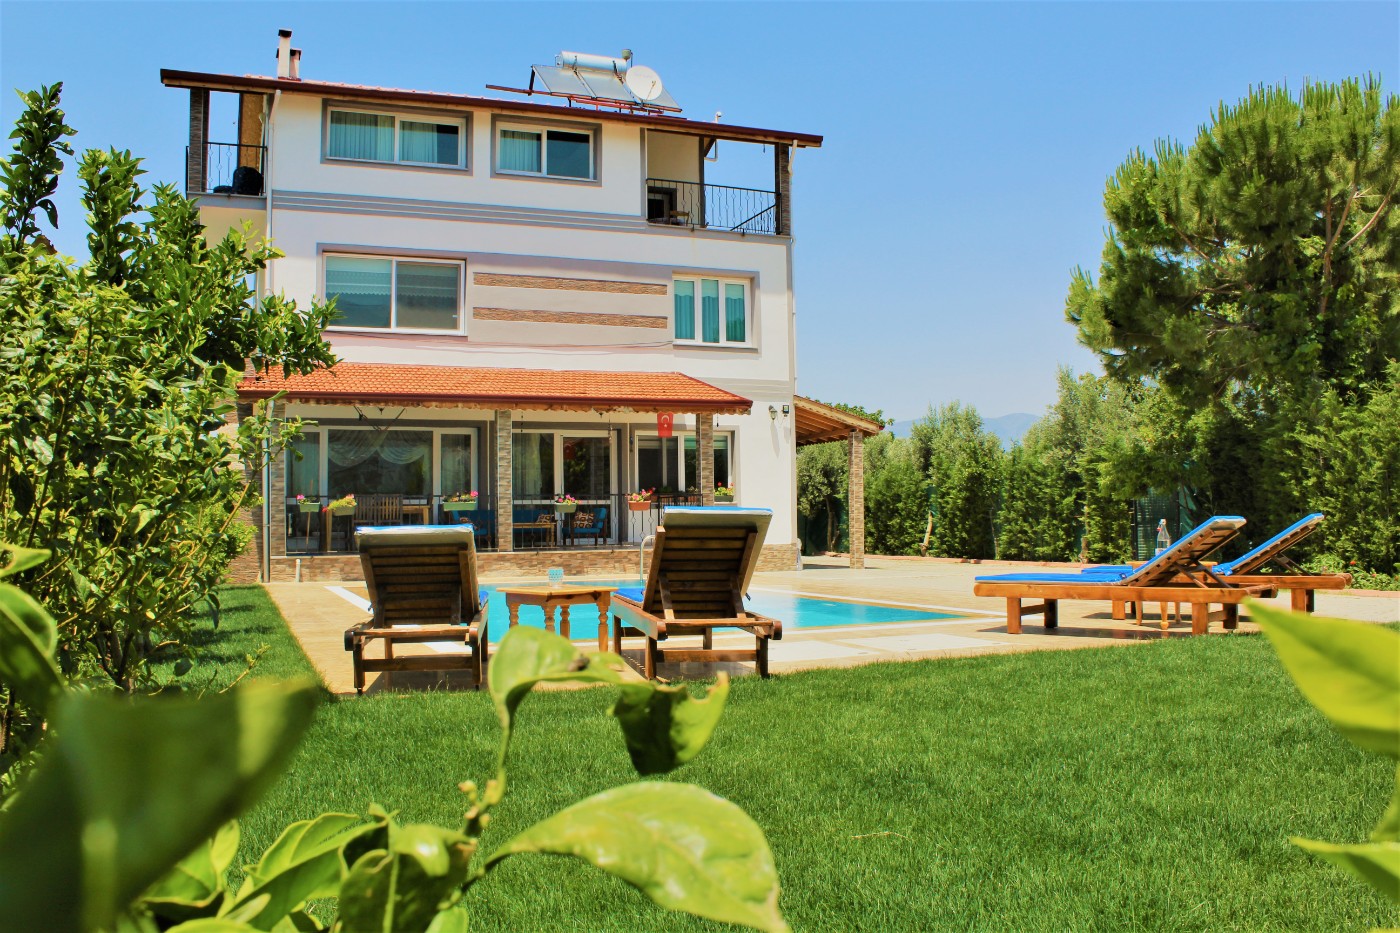 Fethiye Çamköy'de Huzuru Hissedebileceğiniz, Özel Havuzlu, 5+2 Korunaklı Kiralık Villa